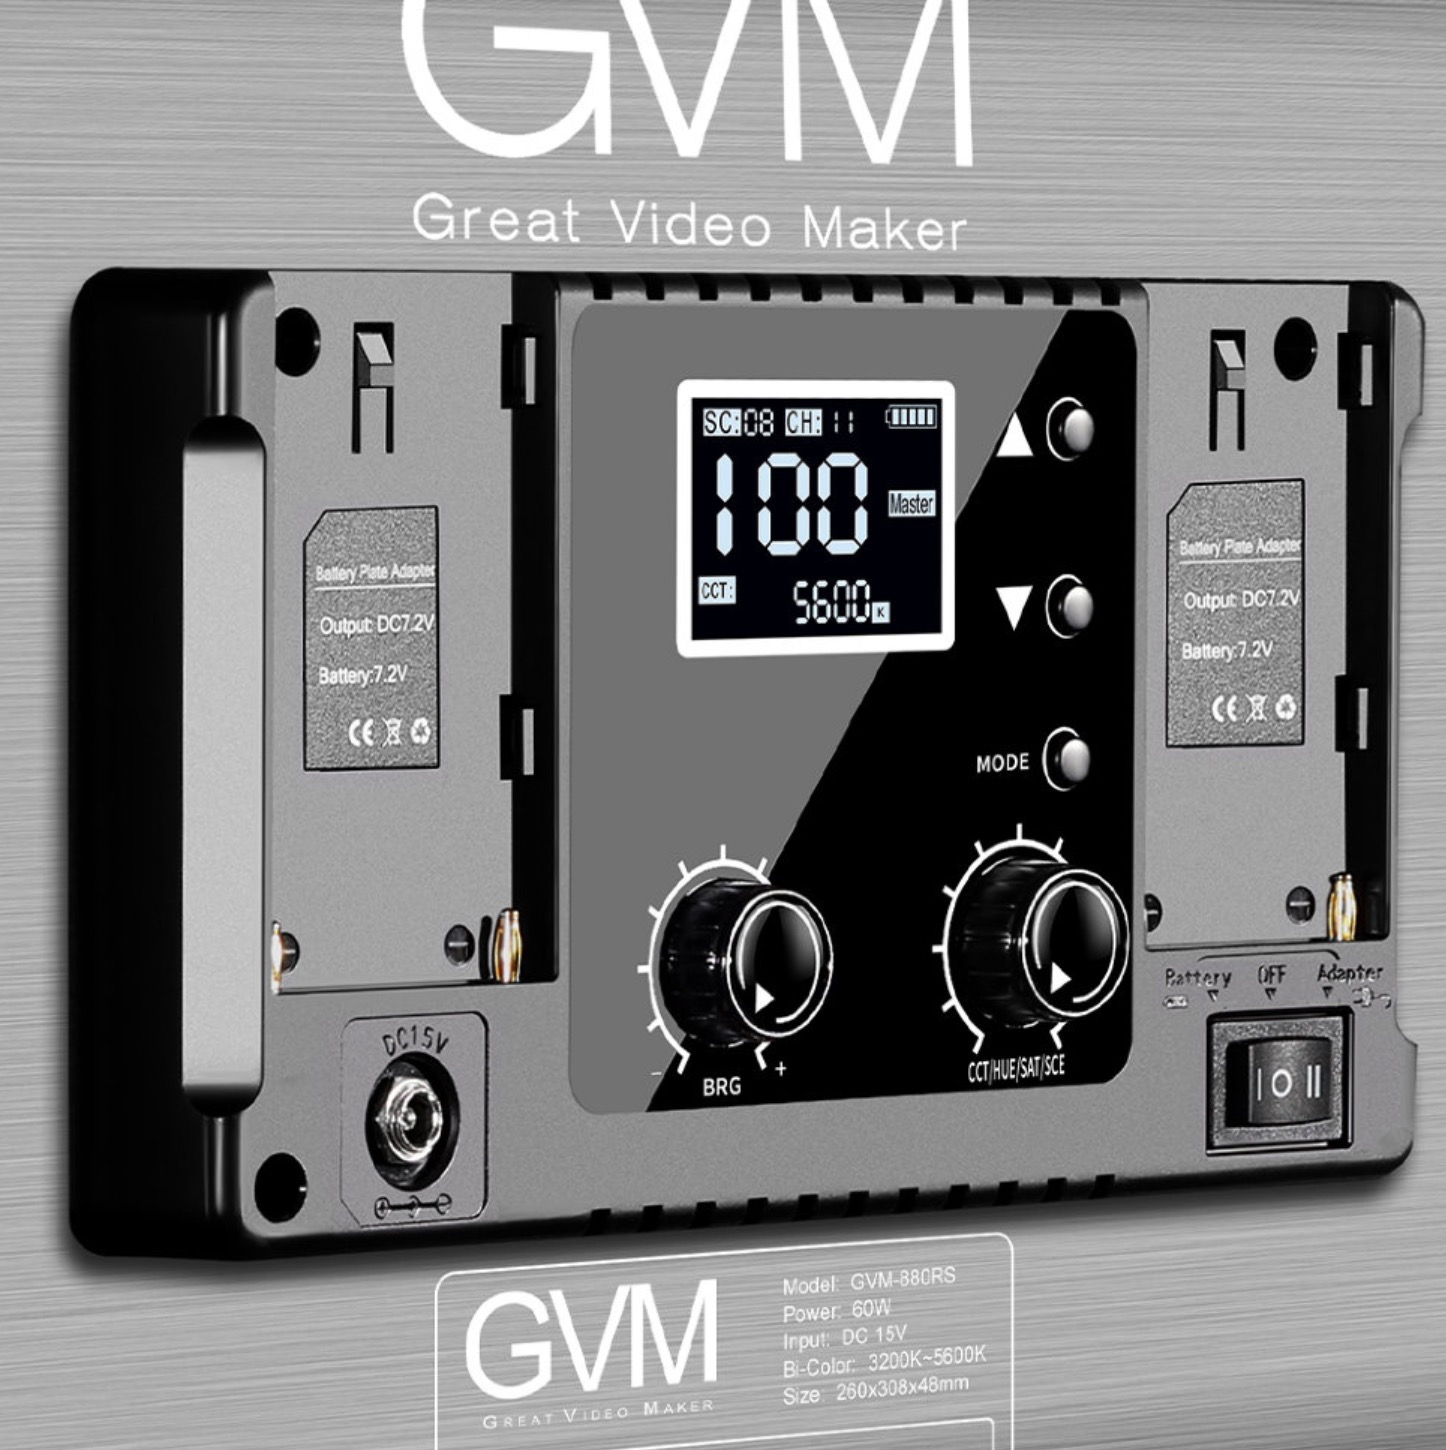 Комплект осветителей GVM 880RS (3шт)